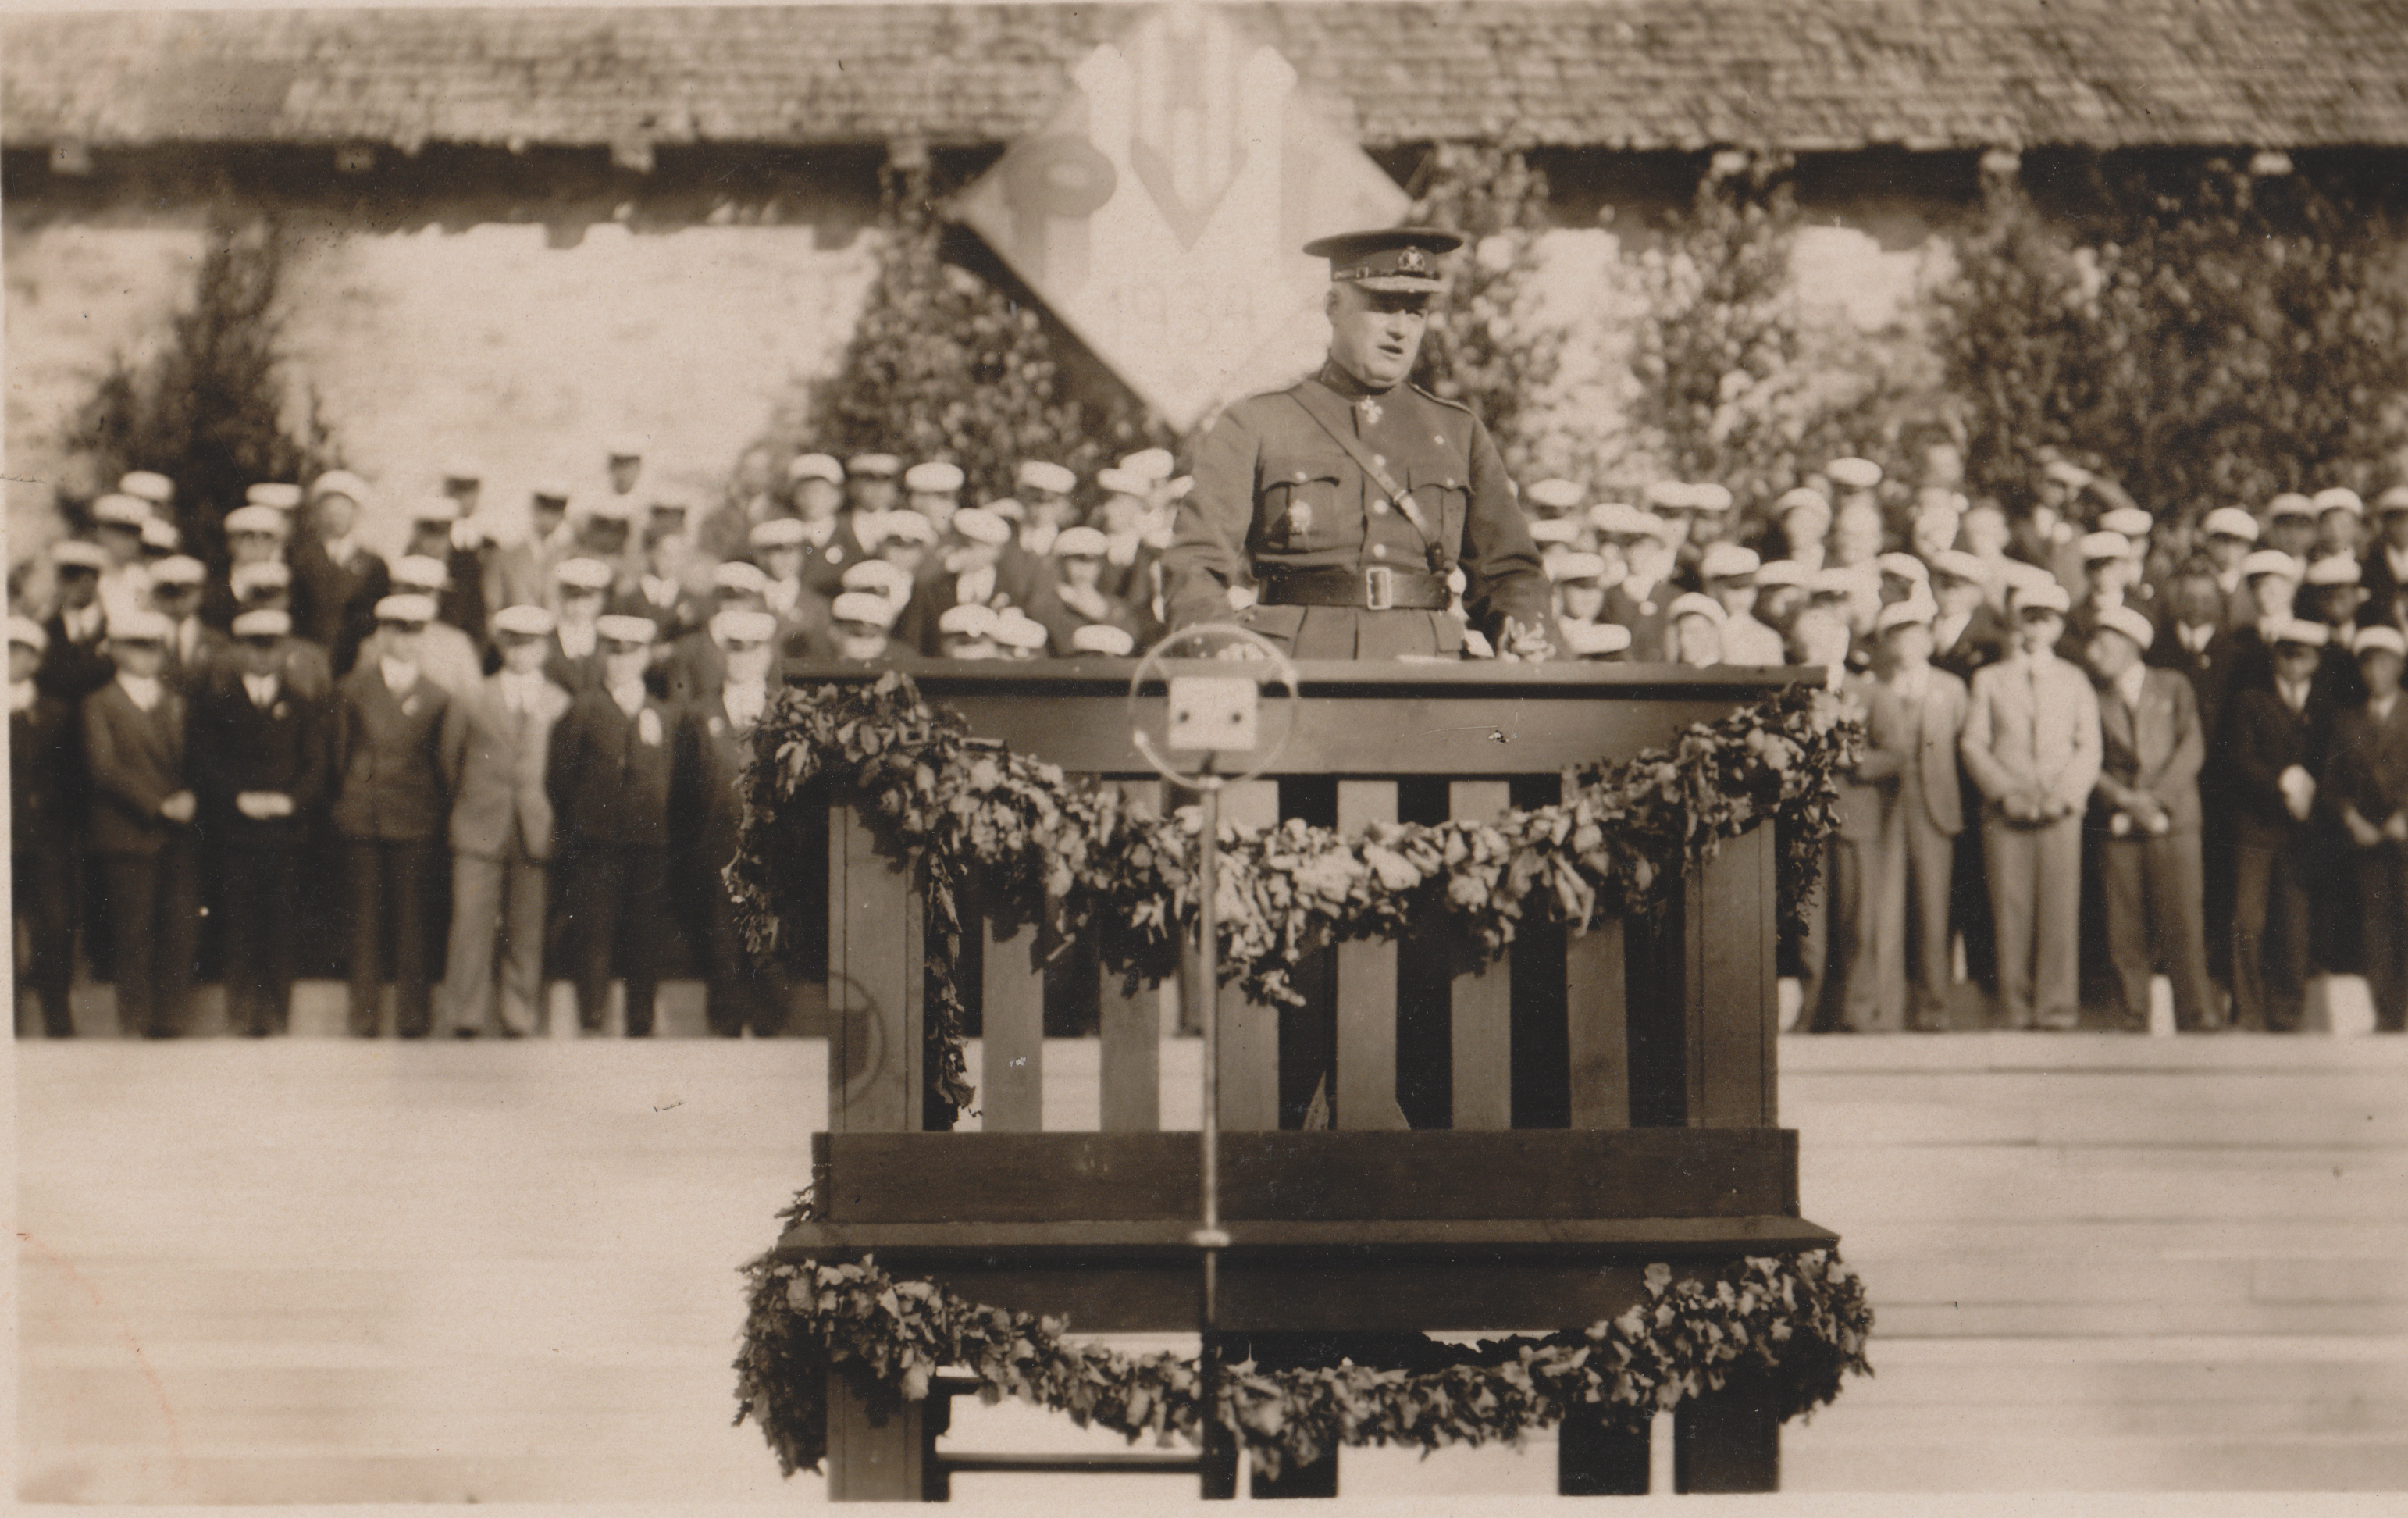 Põltsamaa vanadel fotodel: Kõnepuldis kaitsevägede ülemjuhataja kindral J. Laidoner Põhja-Viljandimaa laulupeol Põltsamaal 1934. aastal.